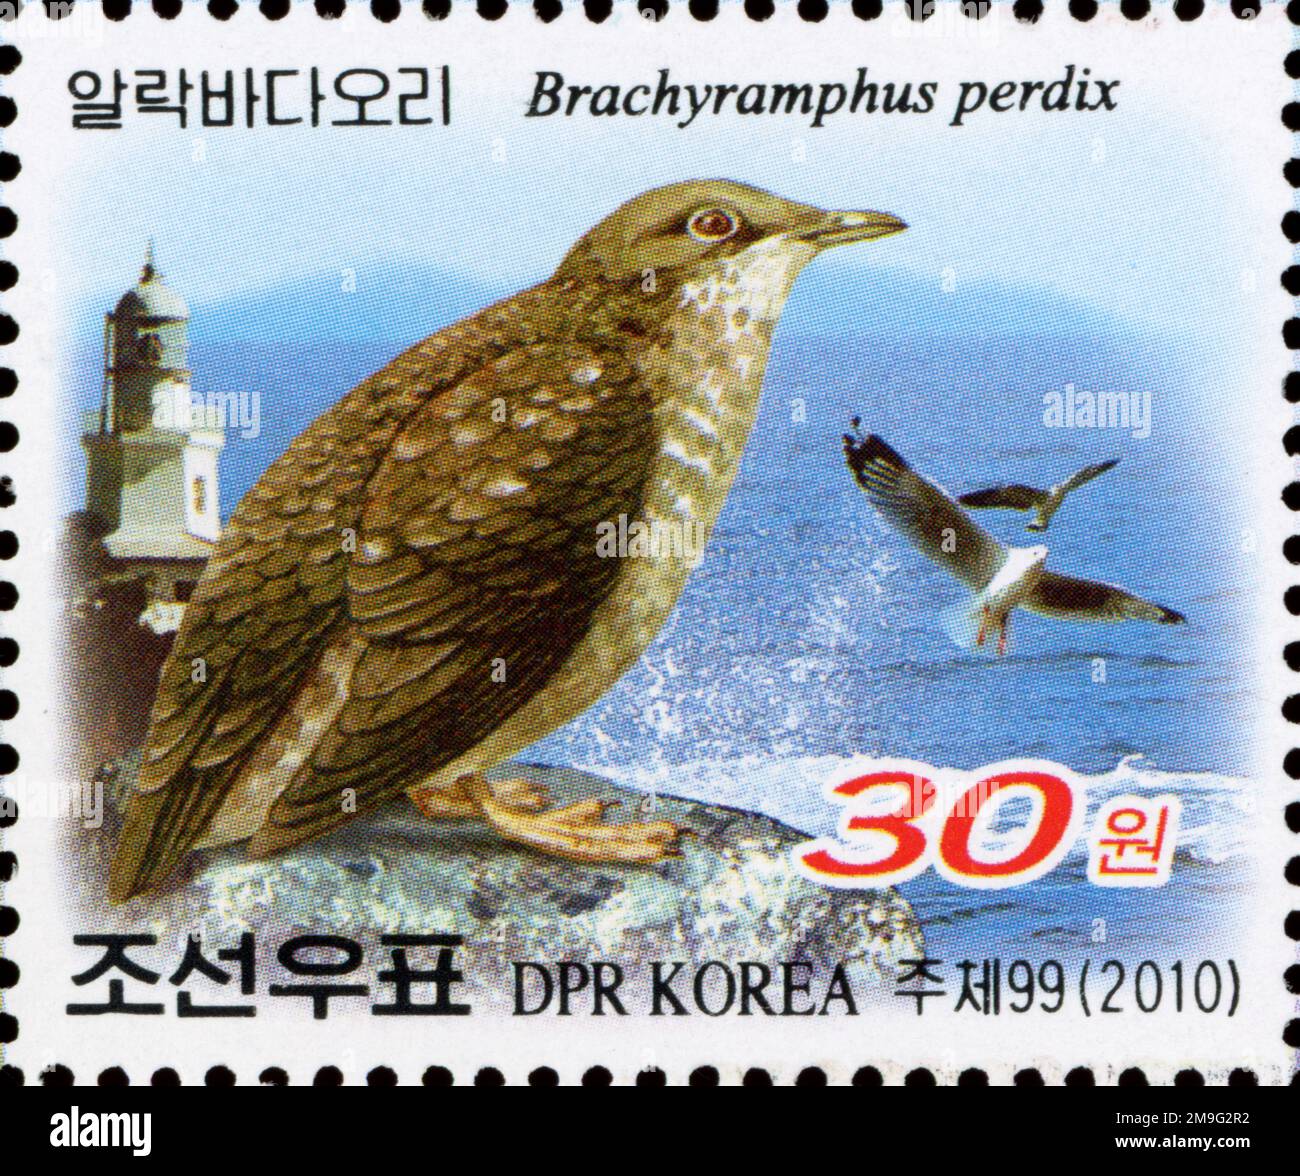 2010 Set di timbri per la Corea del Nord. Salone internazionale dei francobolli BIRDPEX 9 - Anversa, Paesi Bassi. Murrelet, Brachyramphus perdix Foto Stock